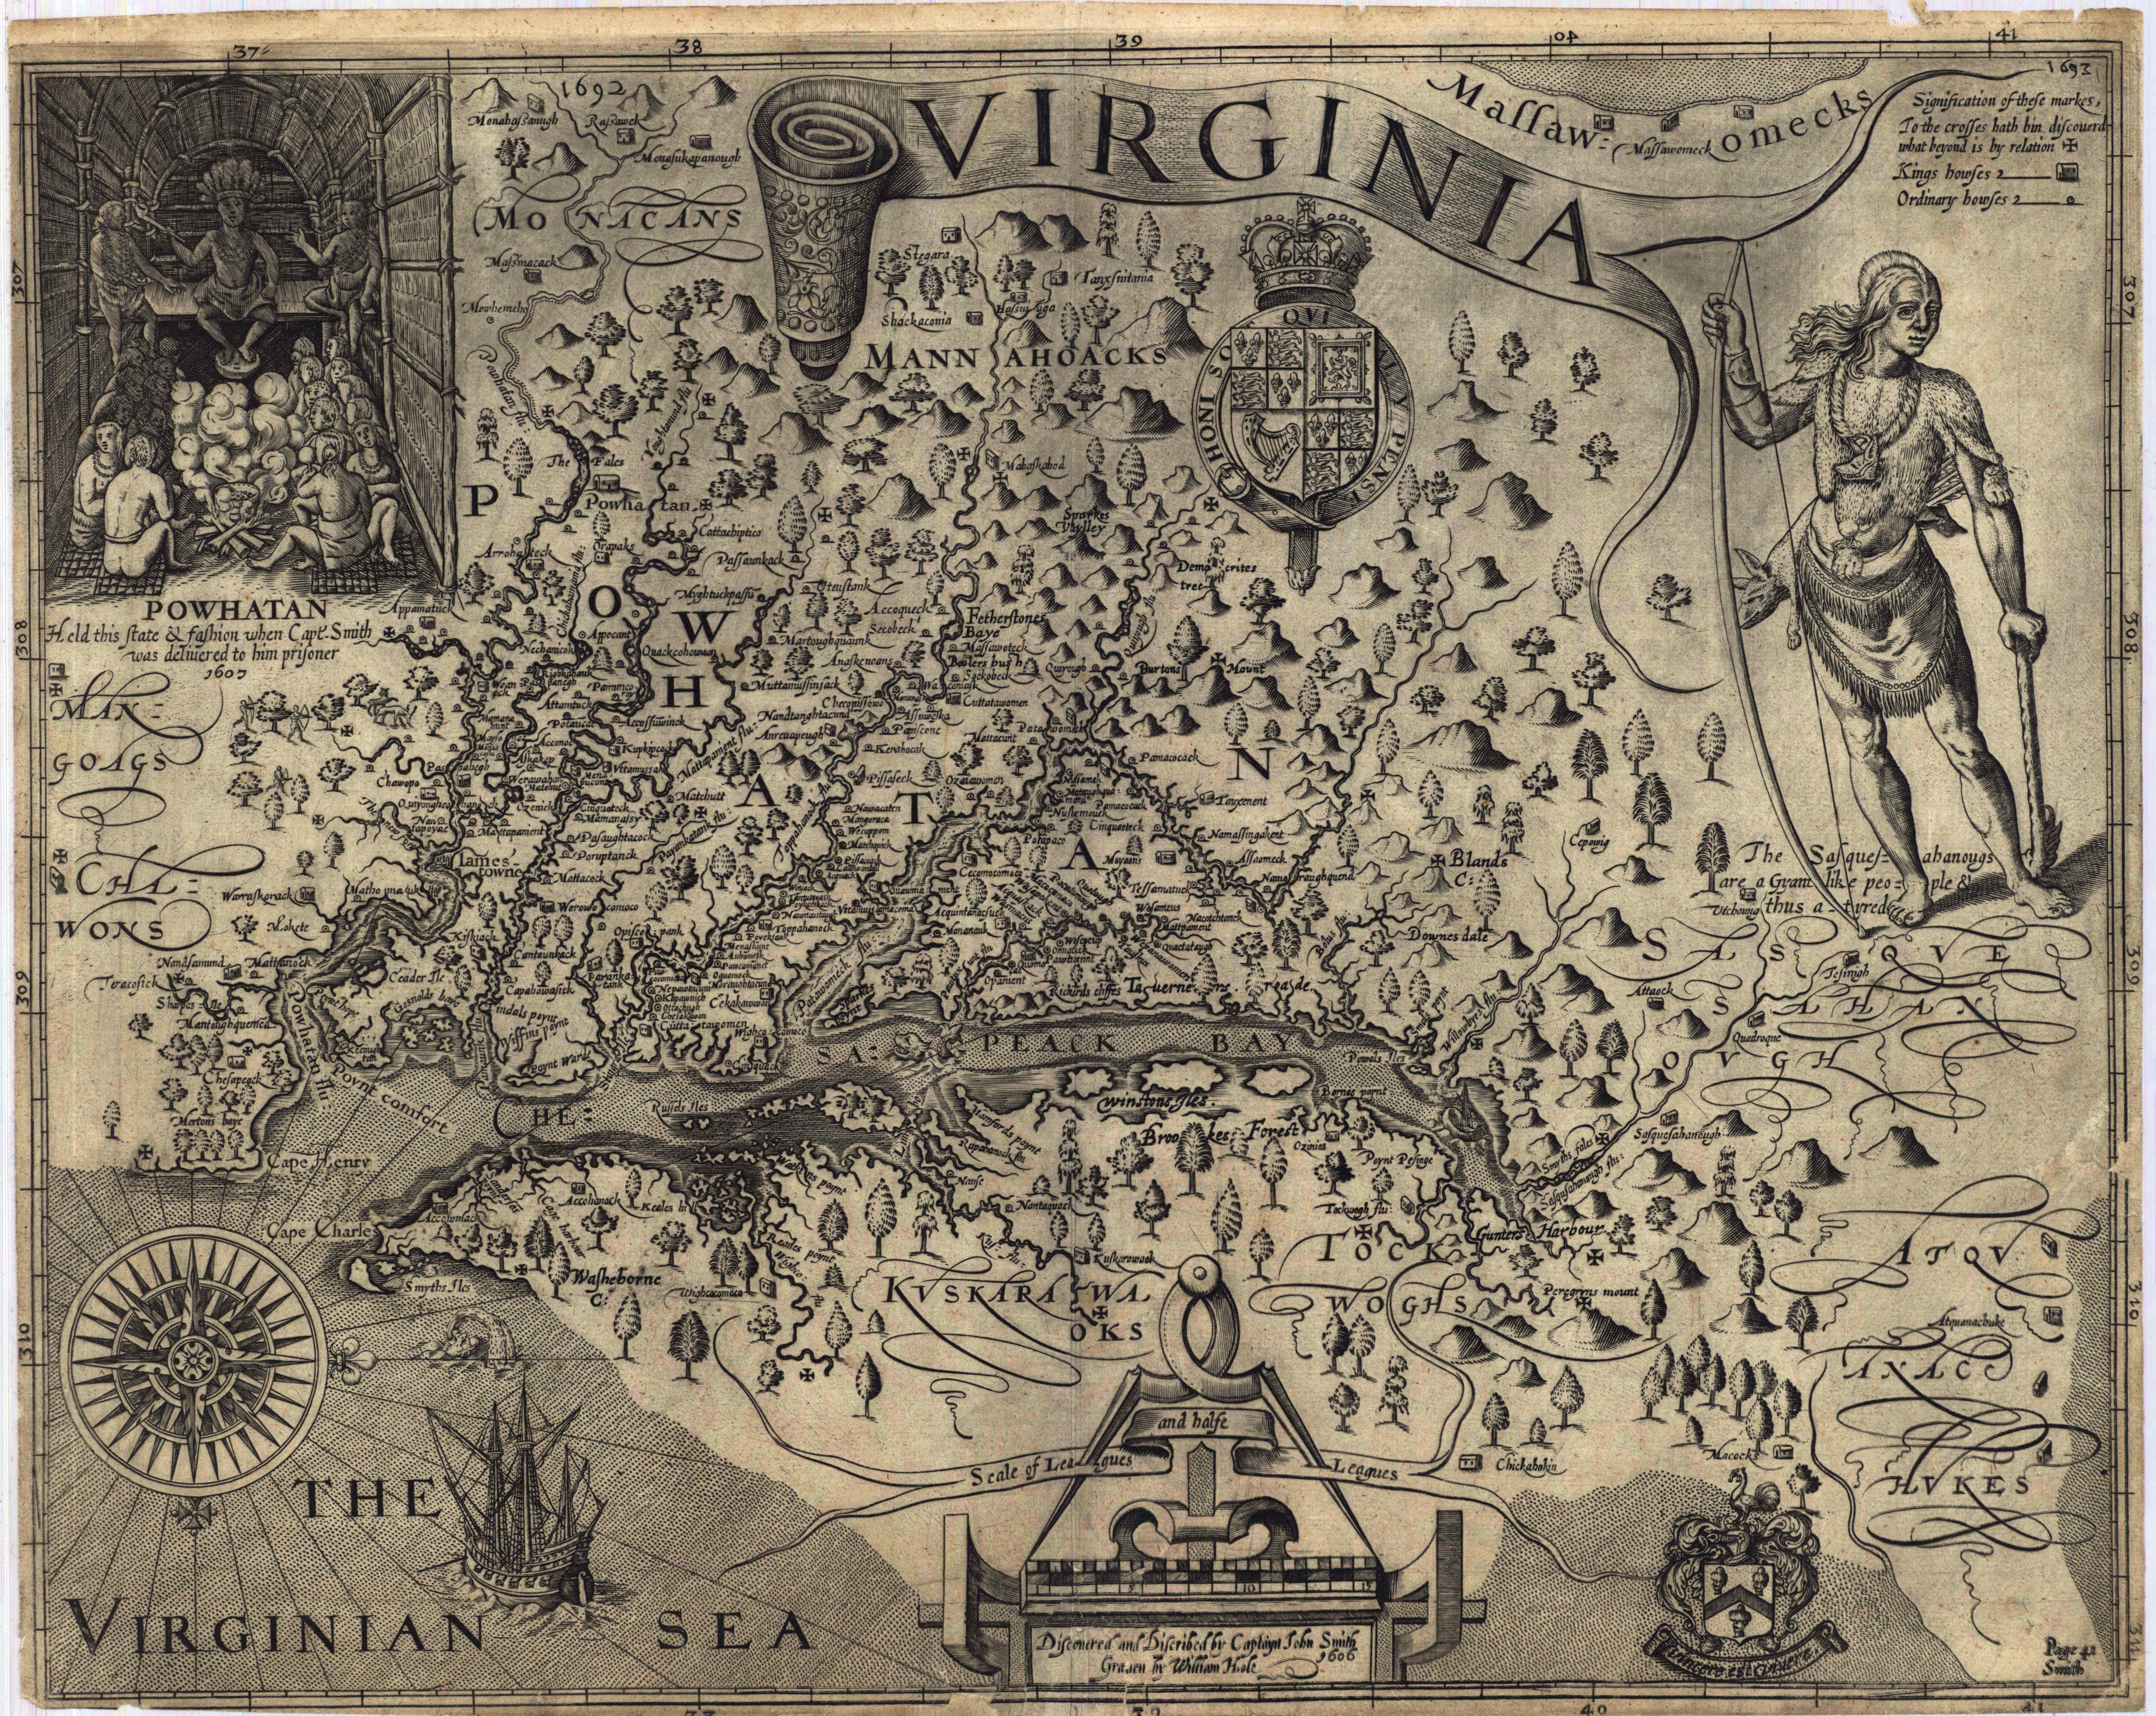 Full image of Captain John Smith's Map